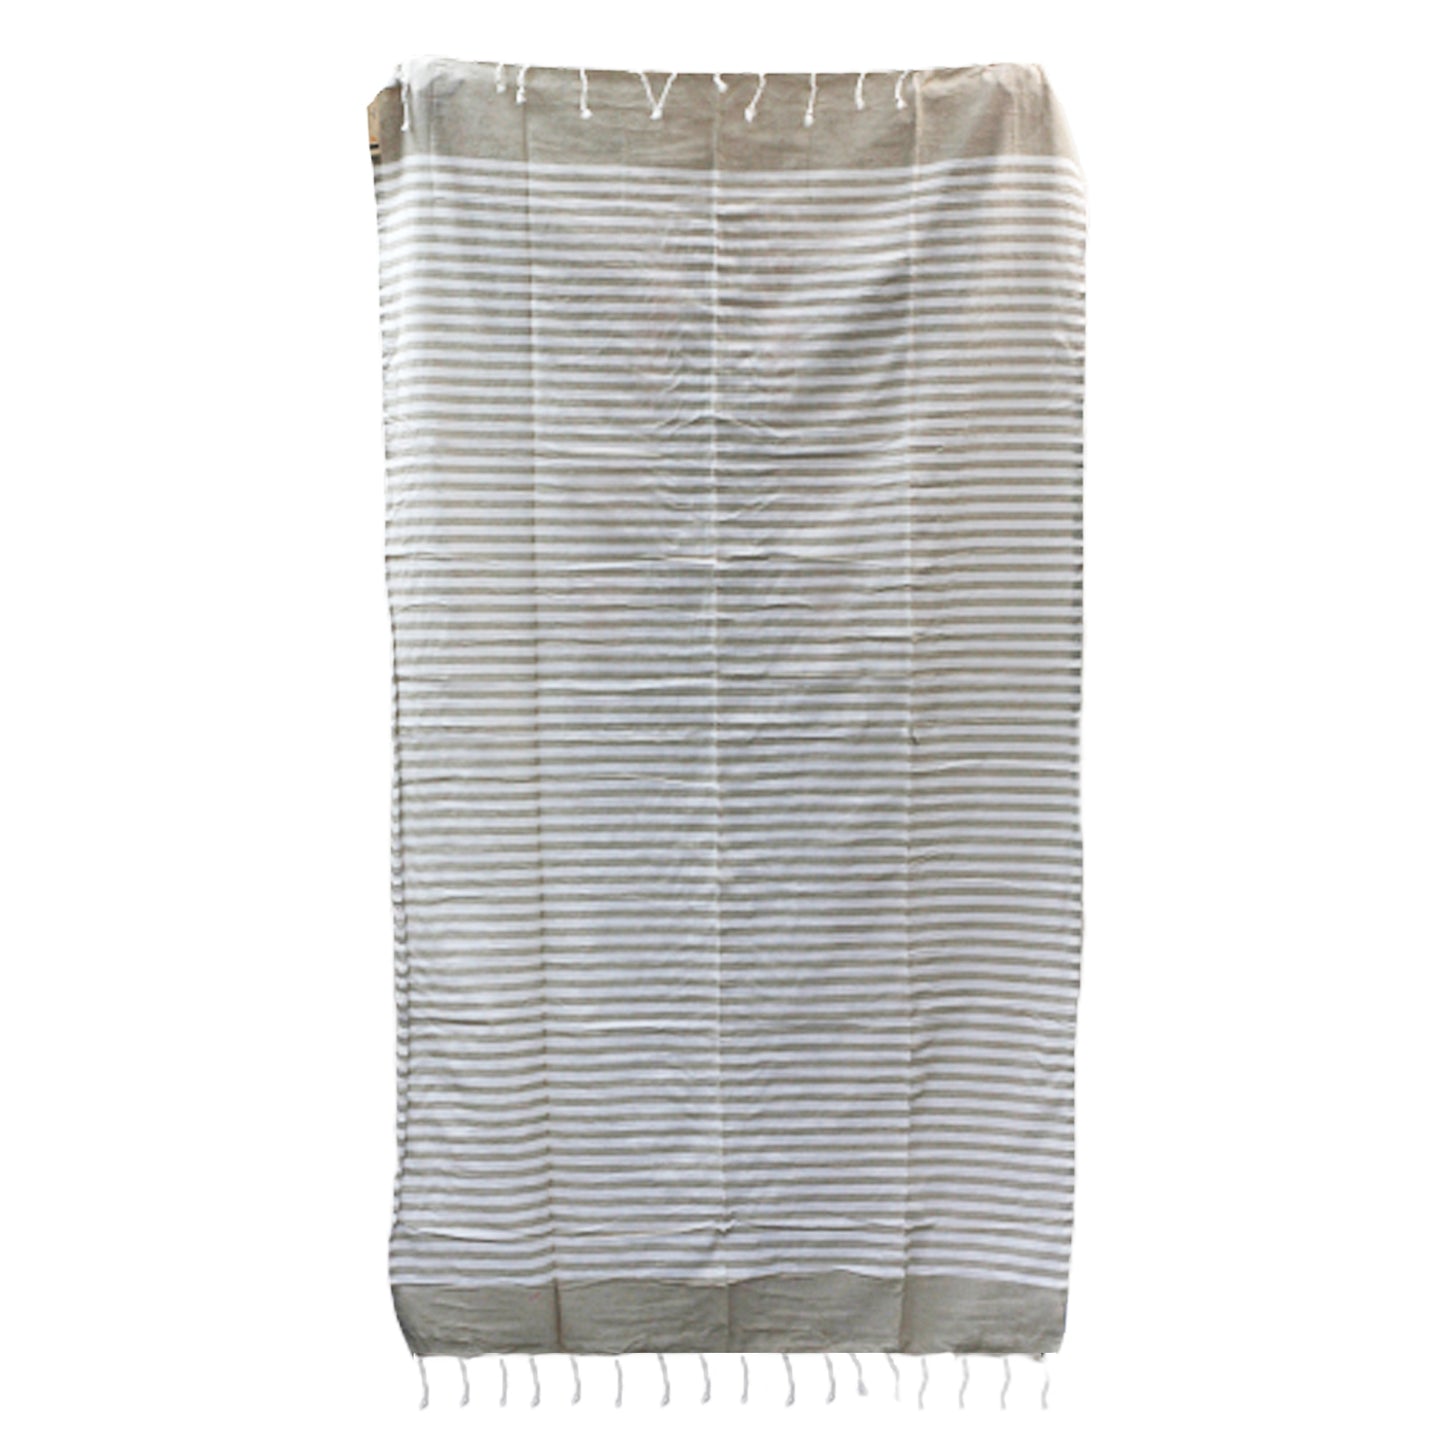 Cotton Pario Towel - 100x180 cm - Warm Sand - Kaftans direct